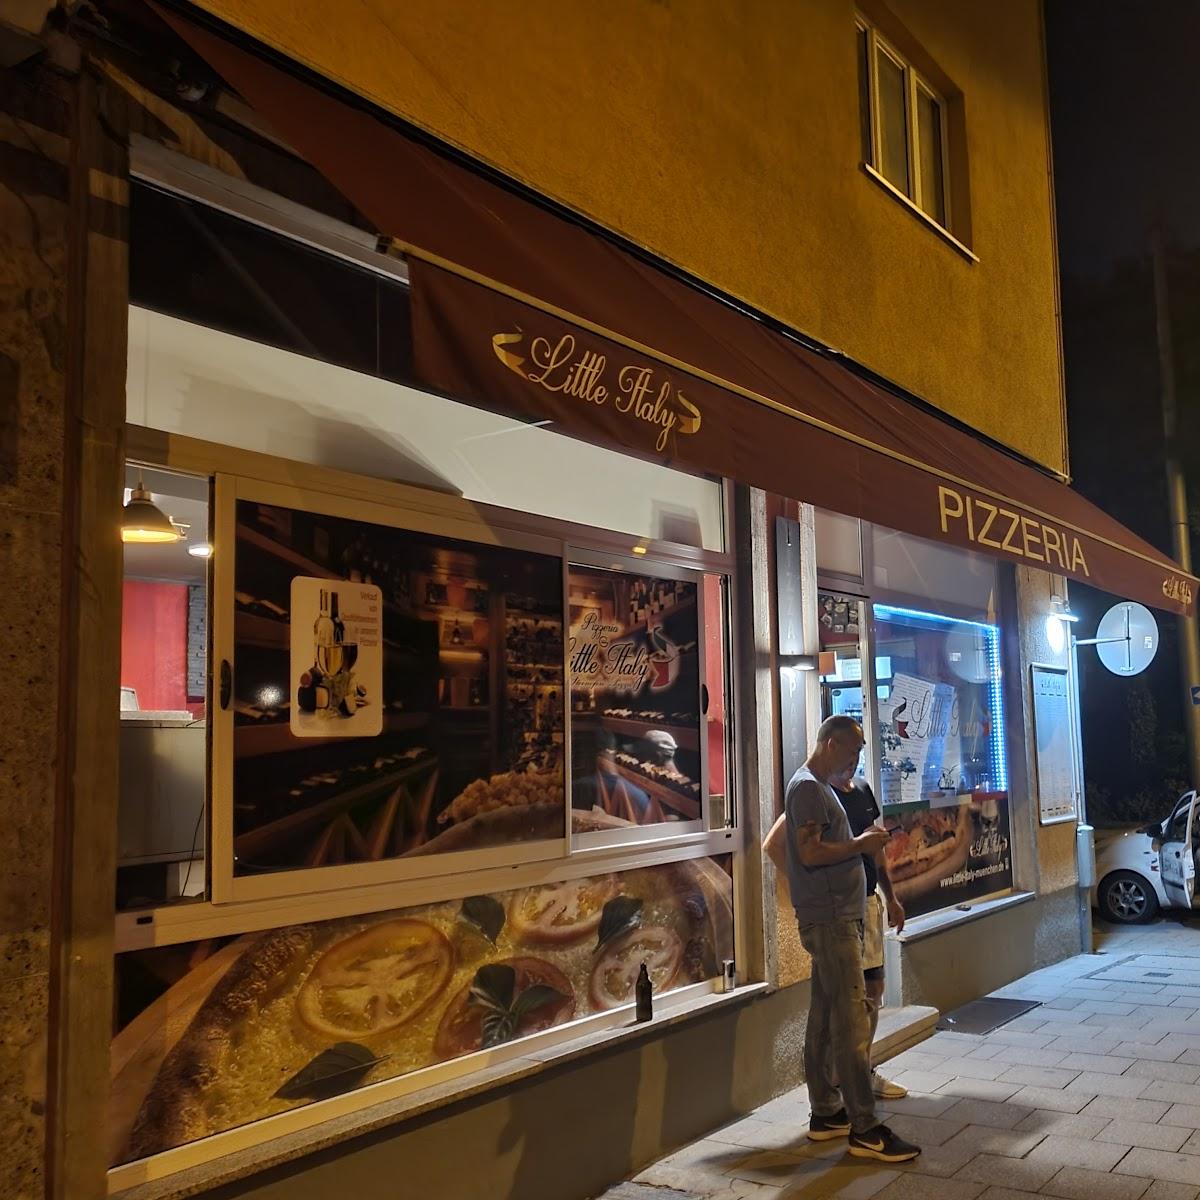 Restaurant "Little Italy Bar Pizzeria" in München